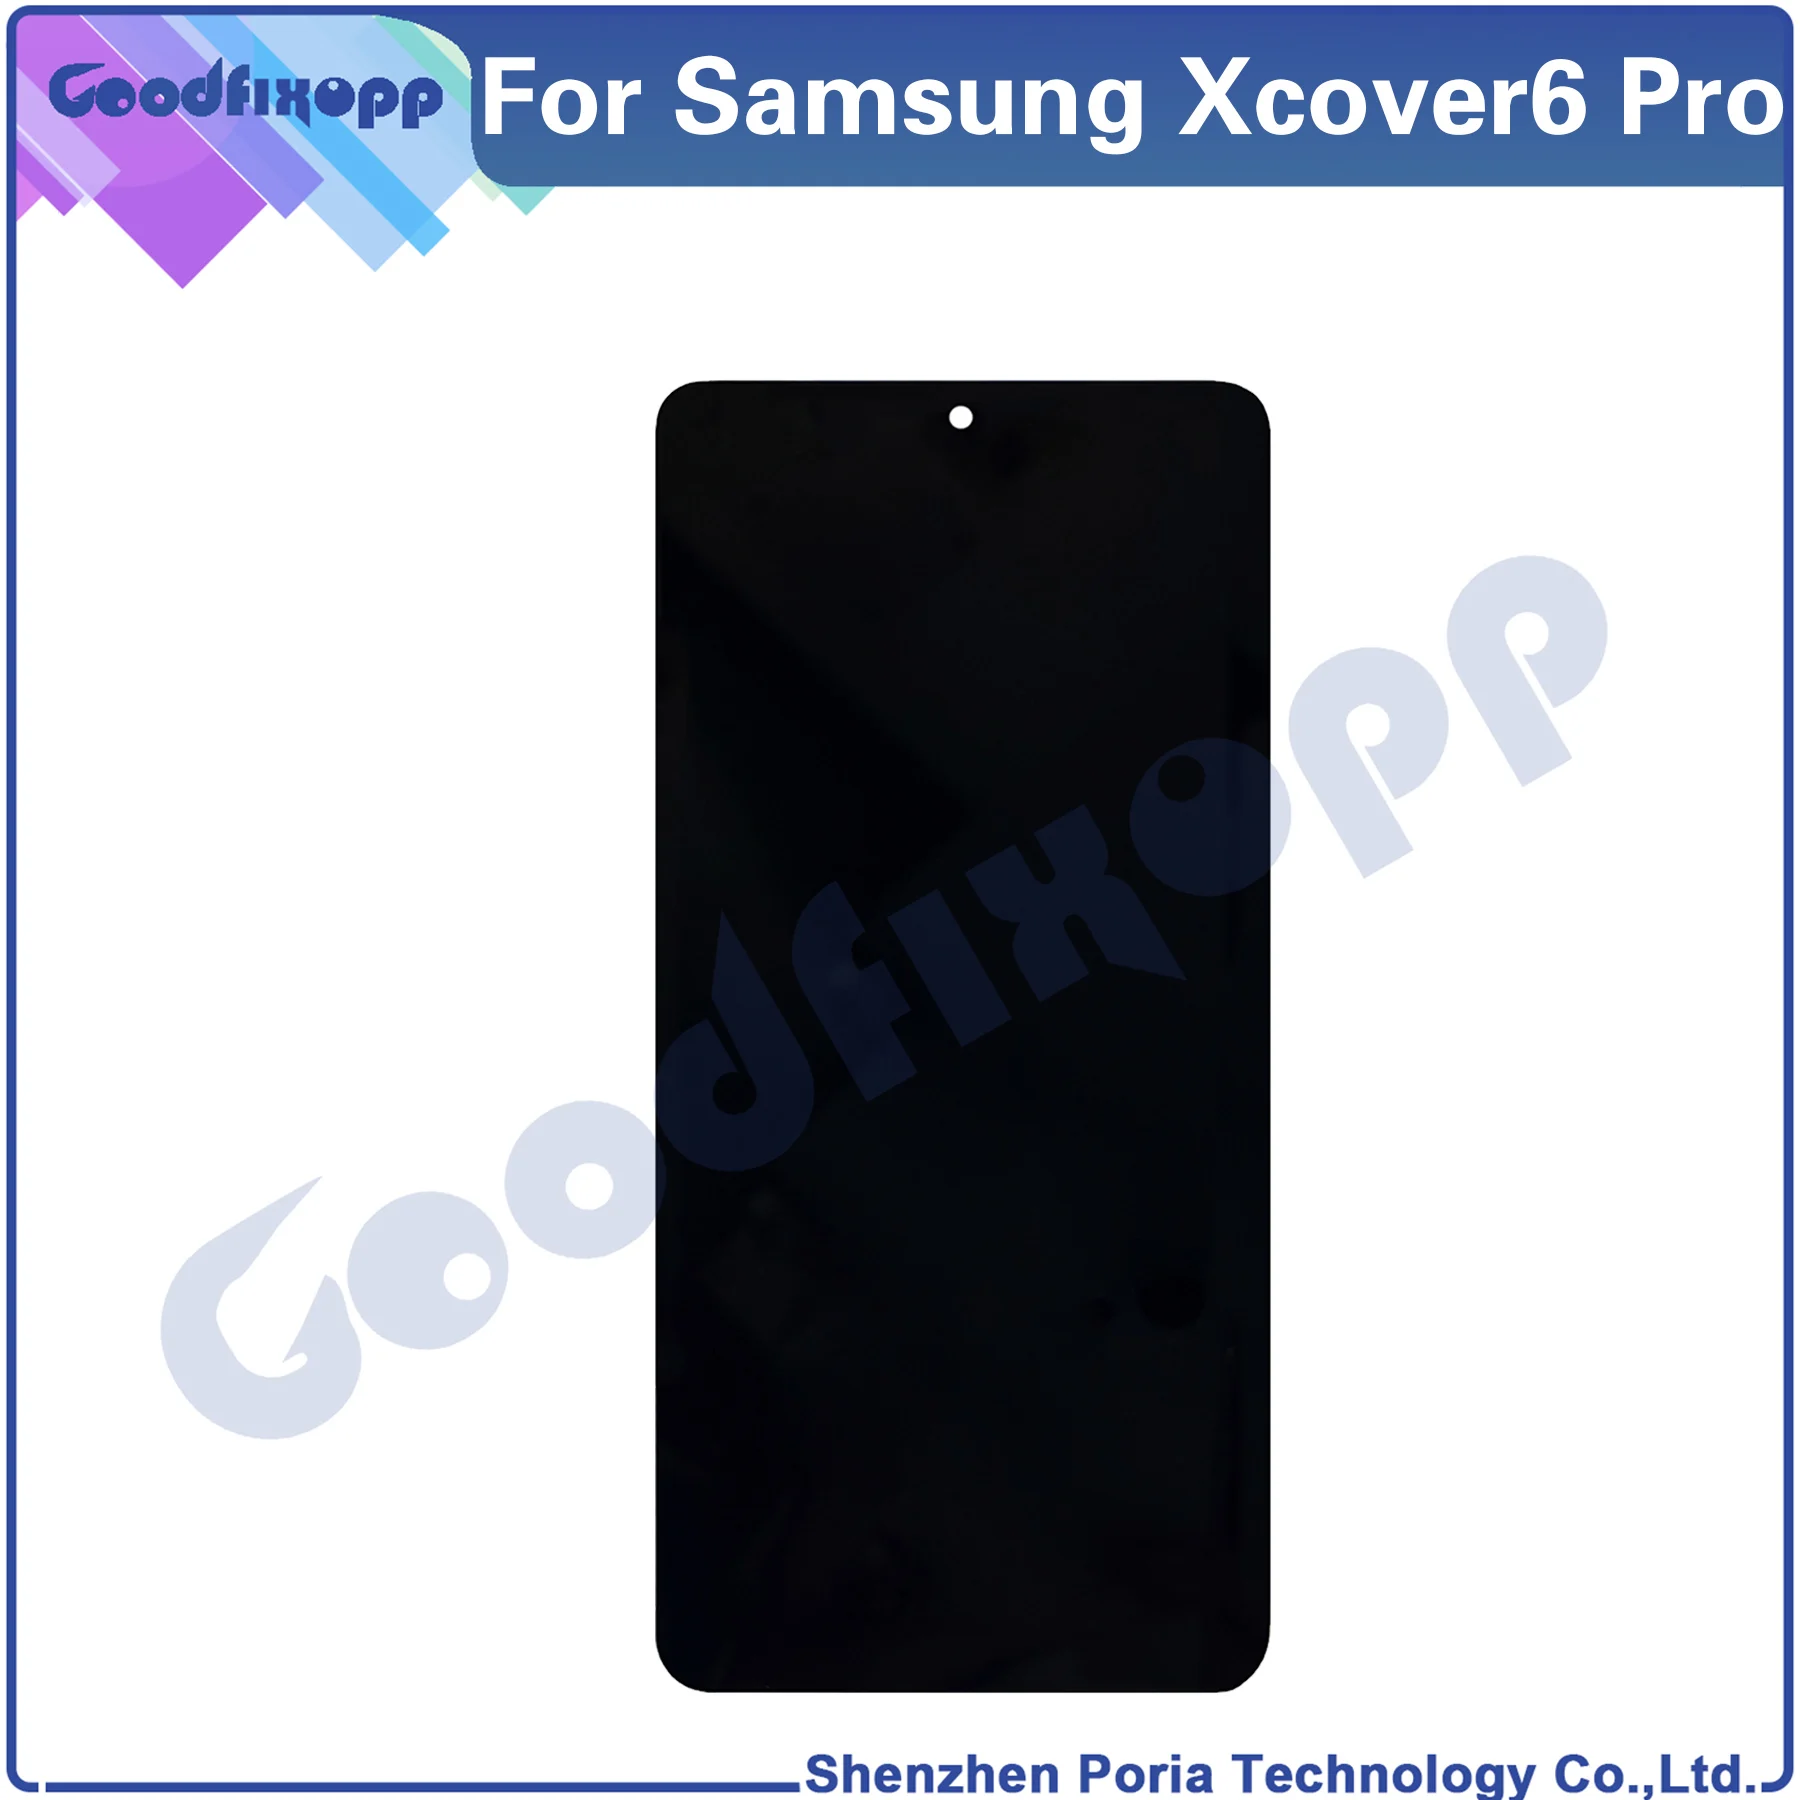 Samsung Galaxy Xcover6 Pro / Xcover Pro 2 SM-G736 G736 lcd ekran dokunmatik ekranlı sayısallaştırıcı grup Onarım Parçaları Değiştirme